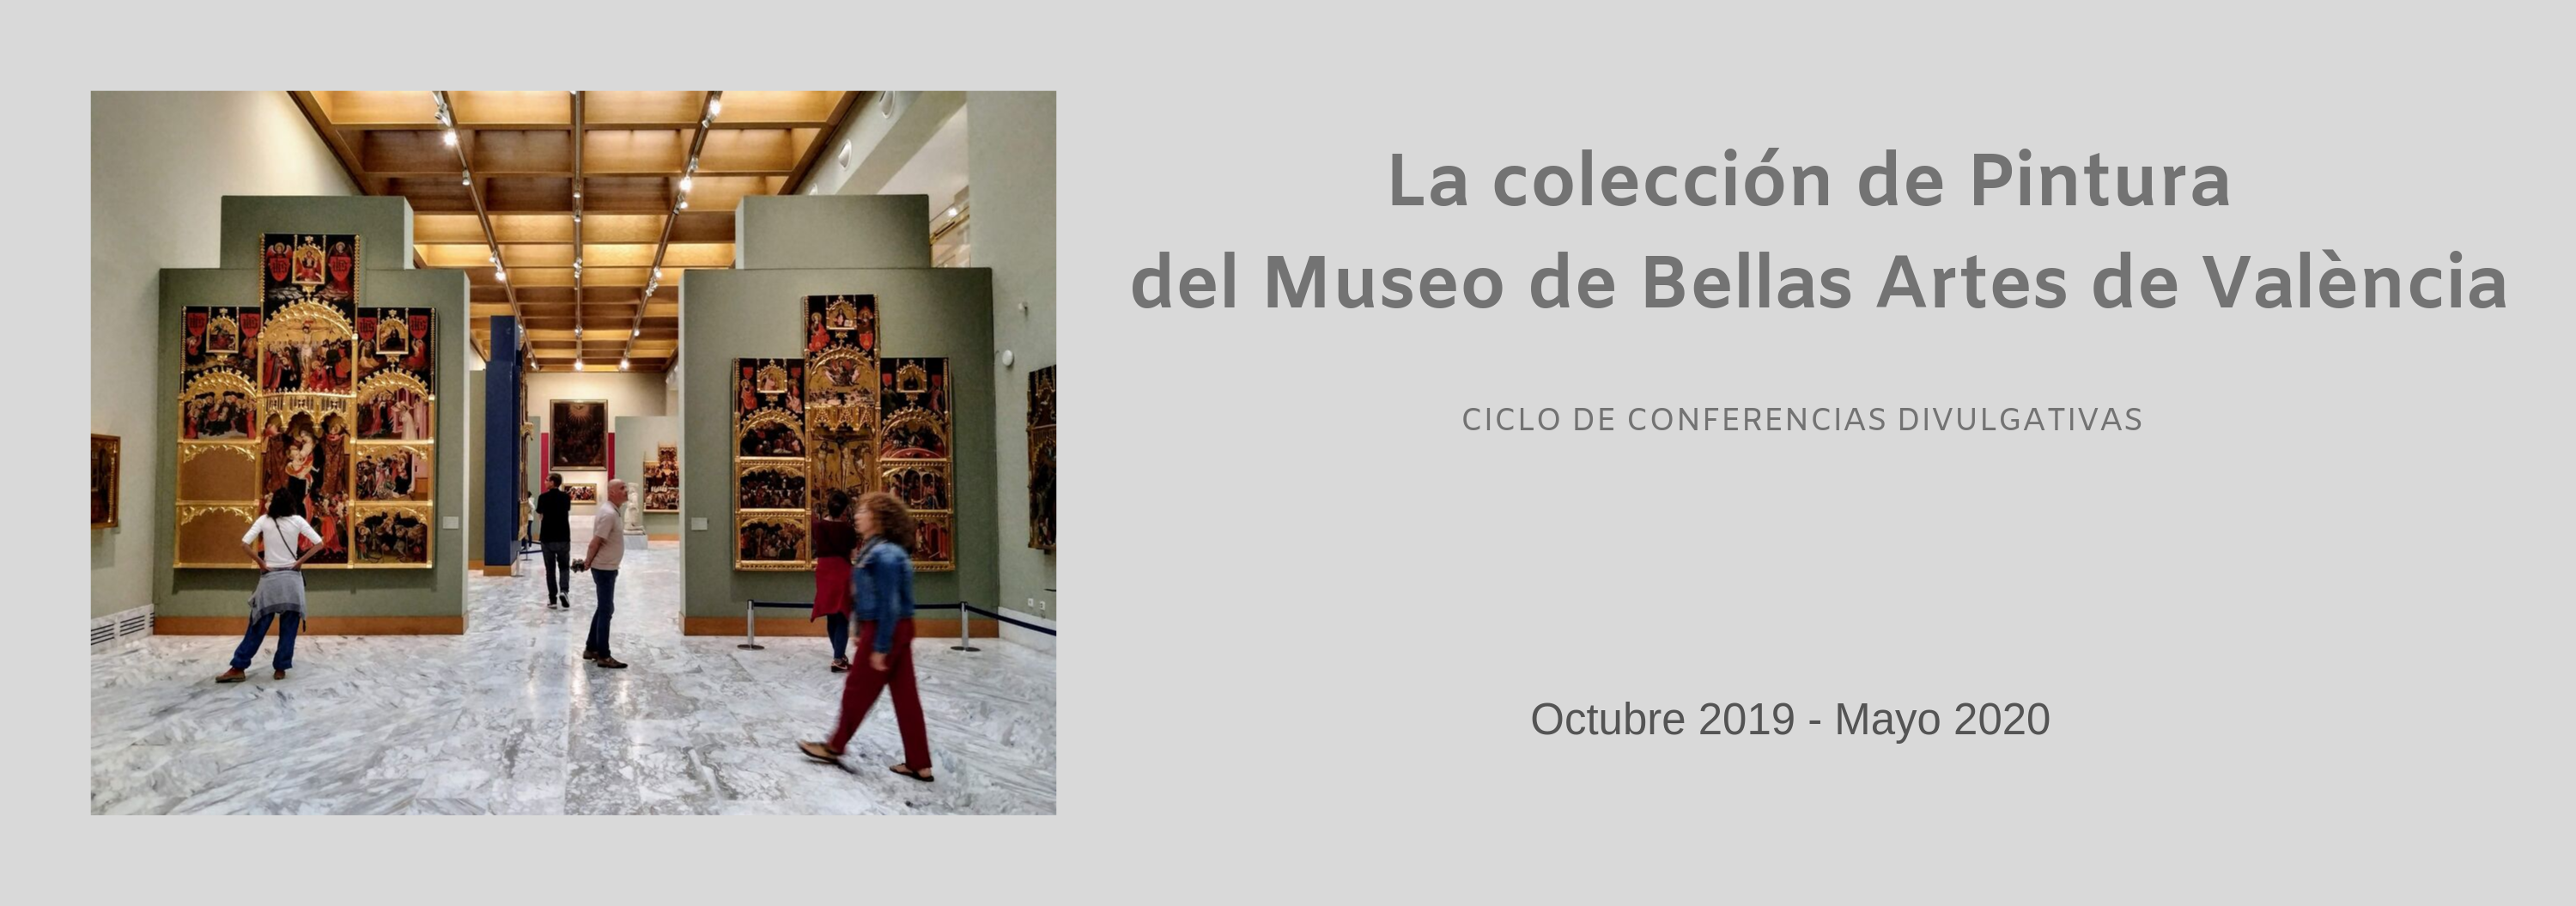 Ciclo de conferencias 'La colección de Pintura del Museo de Bellas Artes de València'